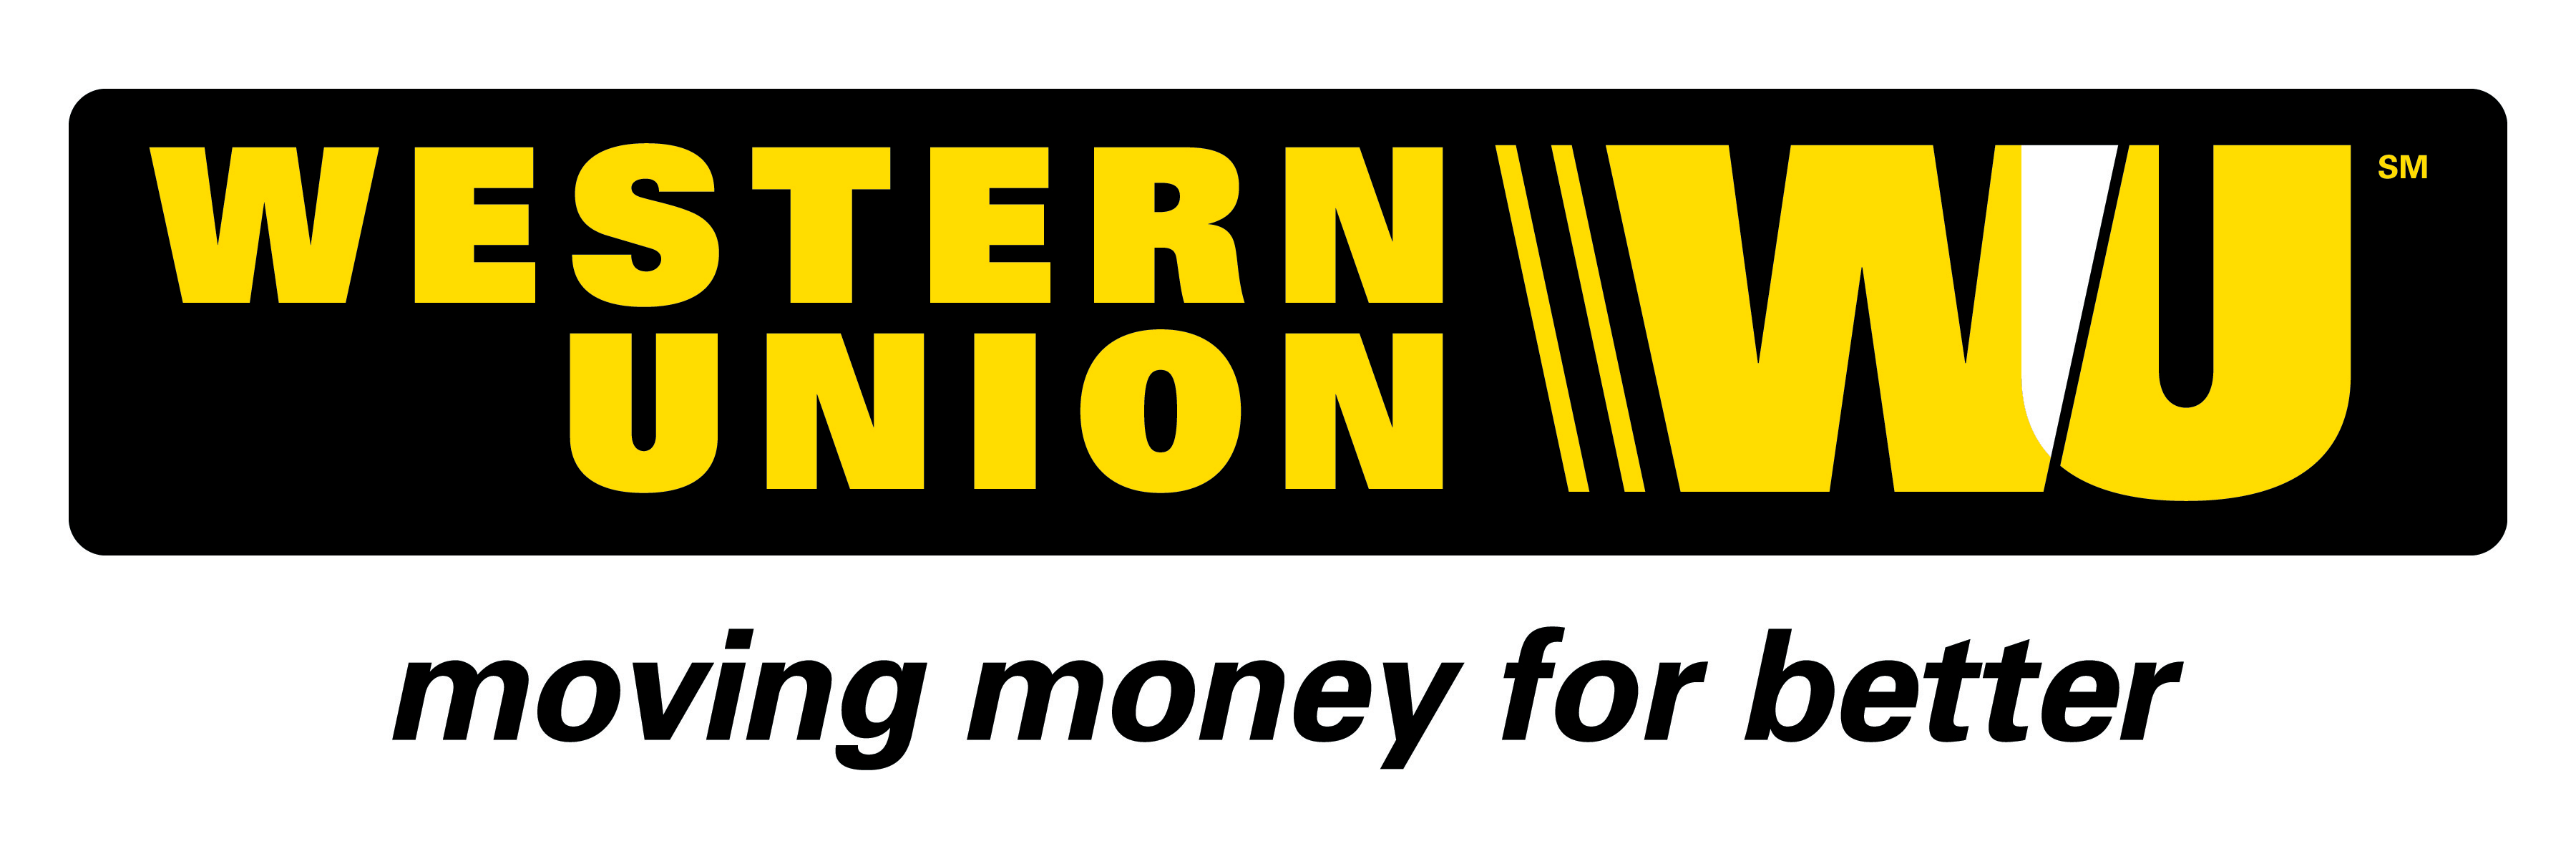 Western Union New Logo - Western Union Logo